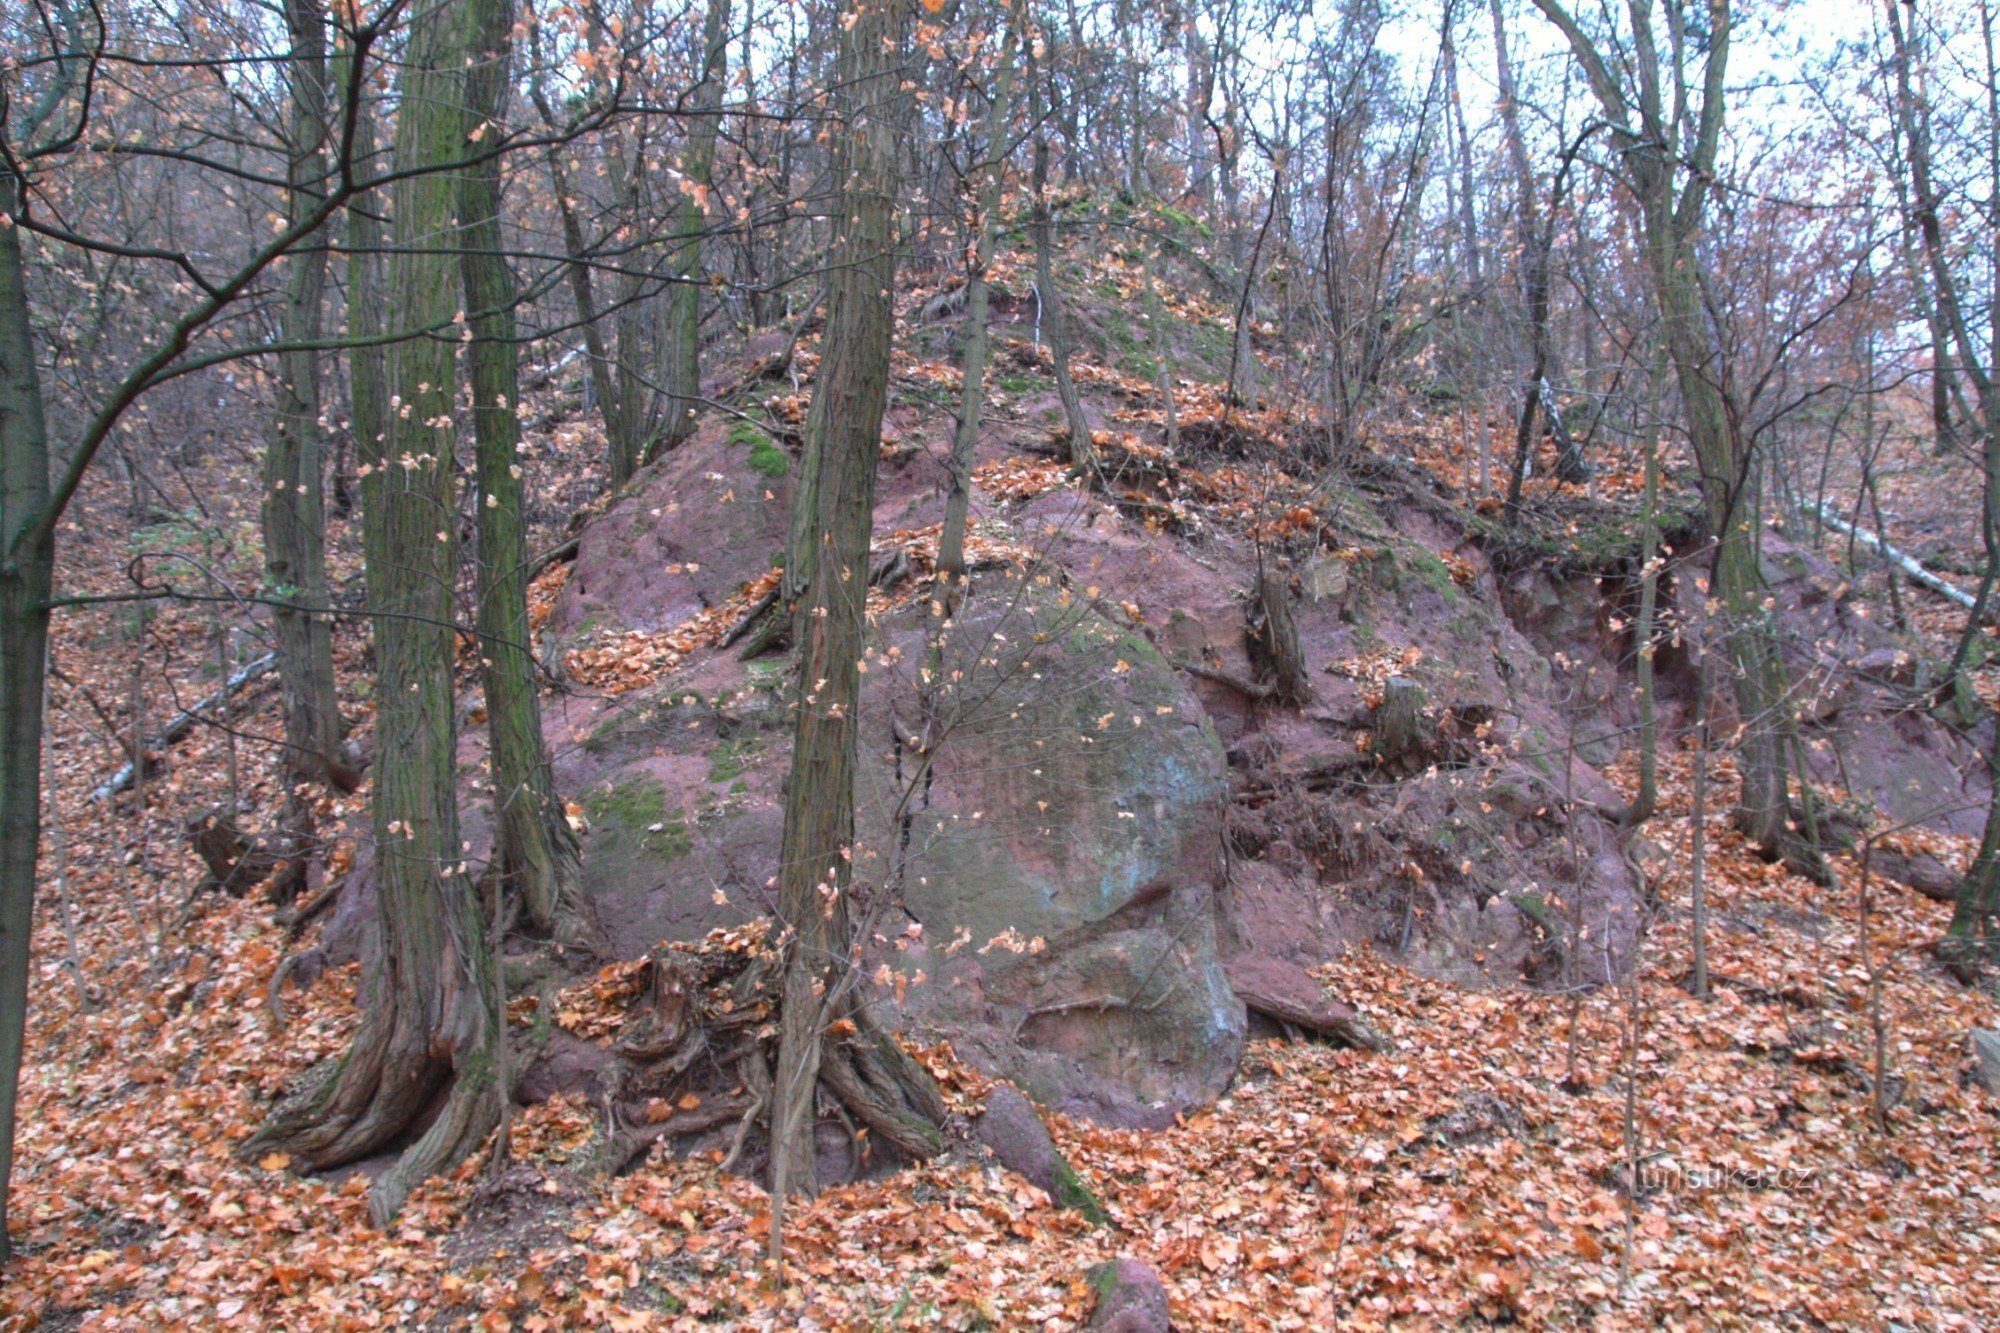 Roci de conglomerat roșu din zona protejată Mahenova straň